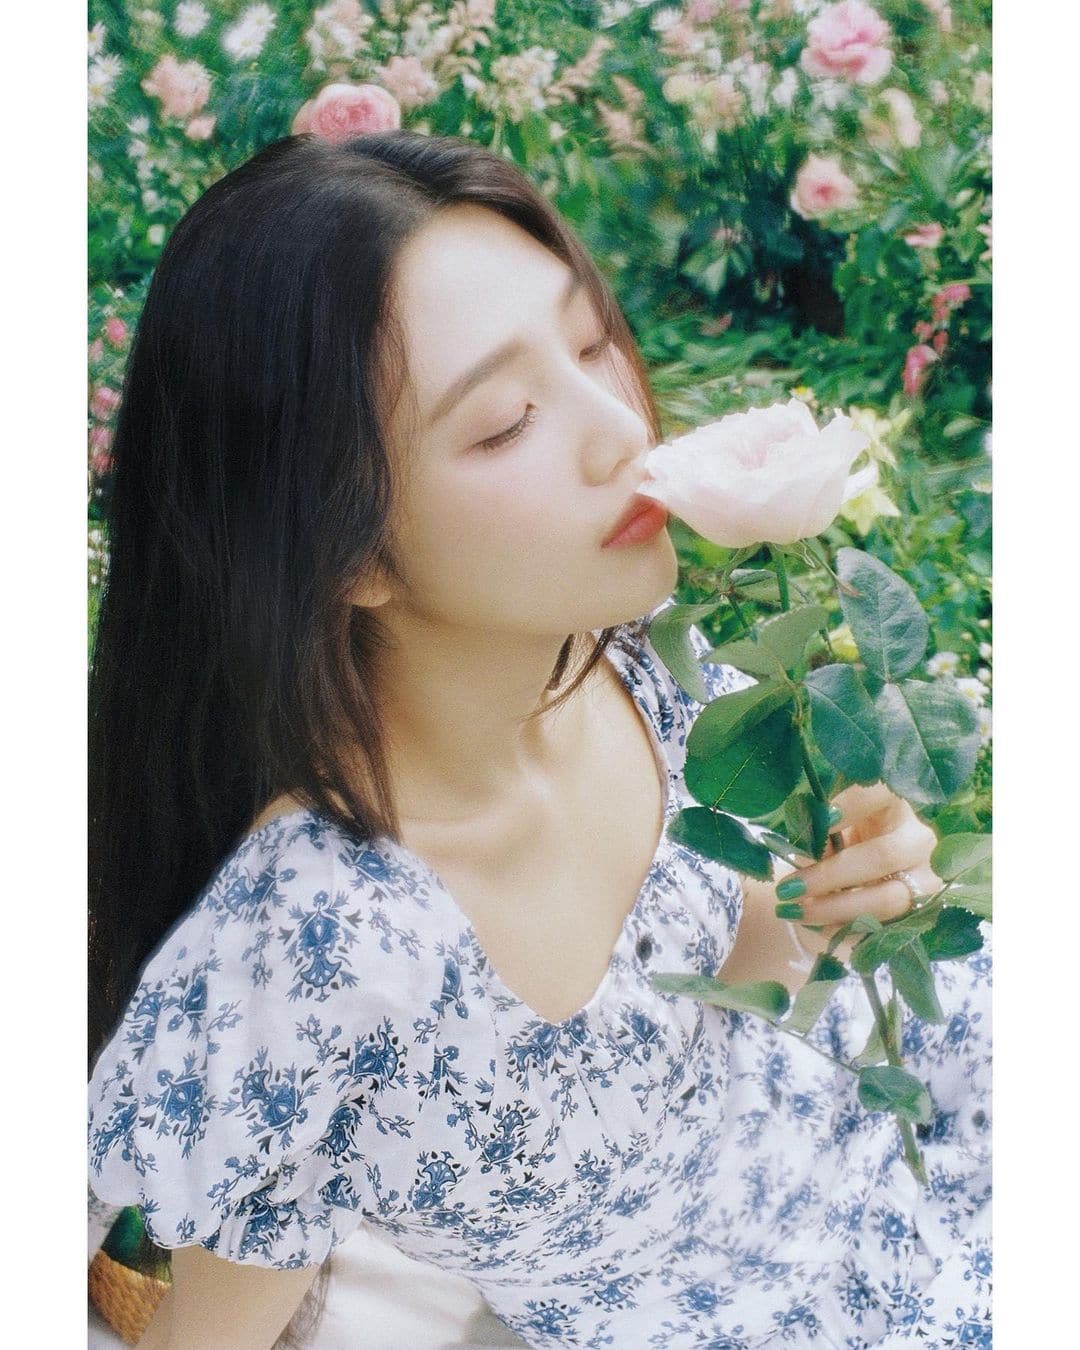 Joy With Flower - Foto - Instagram _imyour_joy